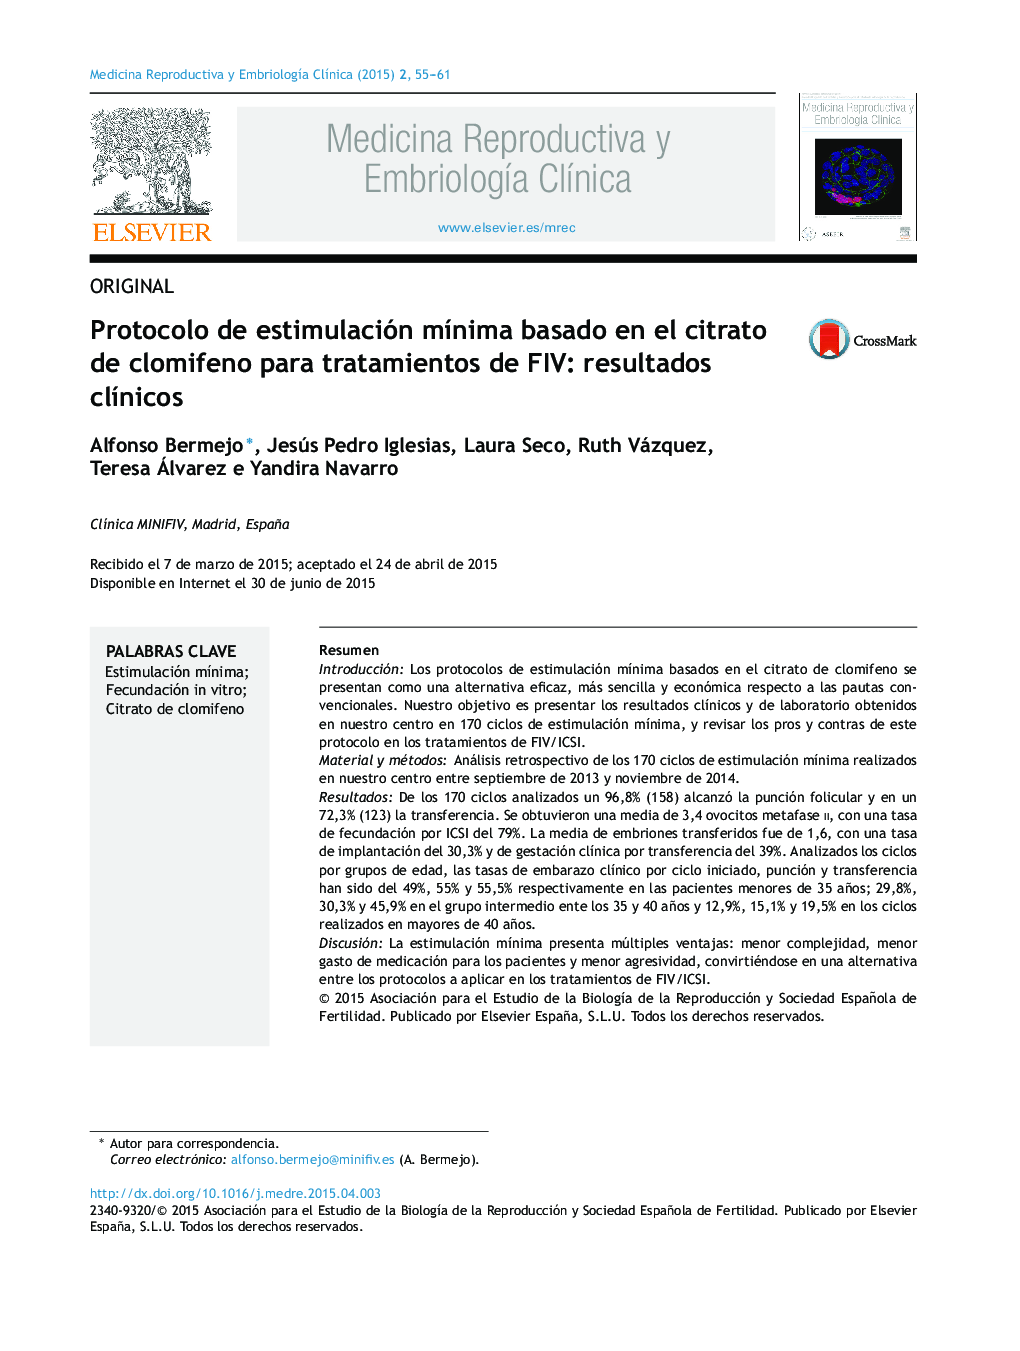 Protocolo de estimulación mÃ­nima basado en el citrato de clomifeno para tratamientos de FIV: resultados clÃ­nicos